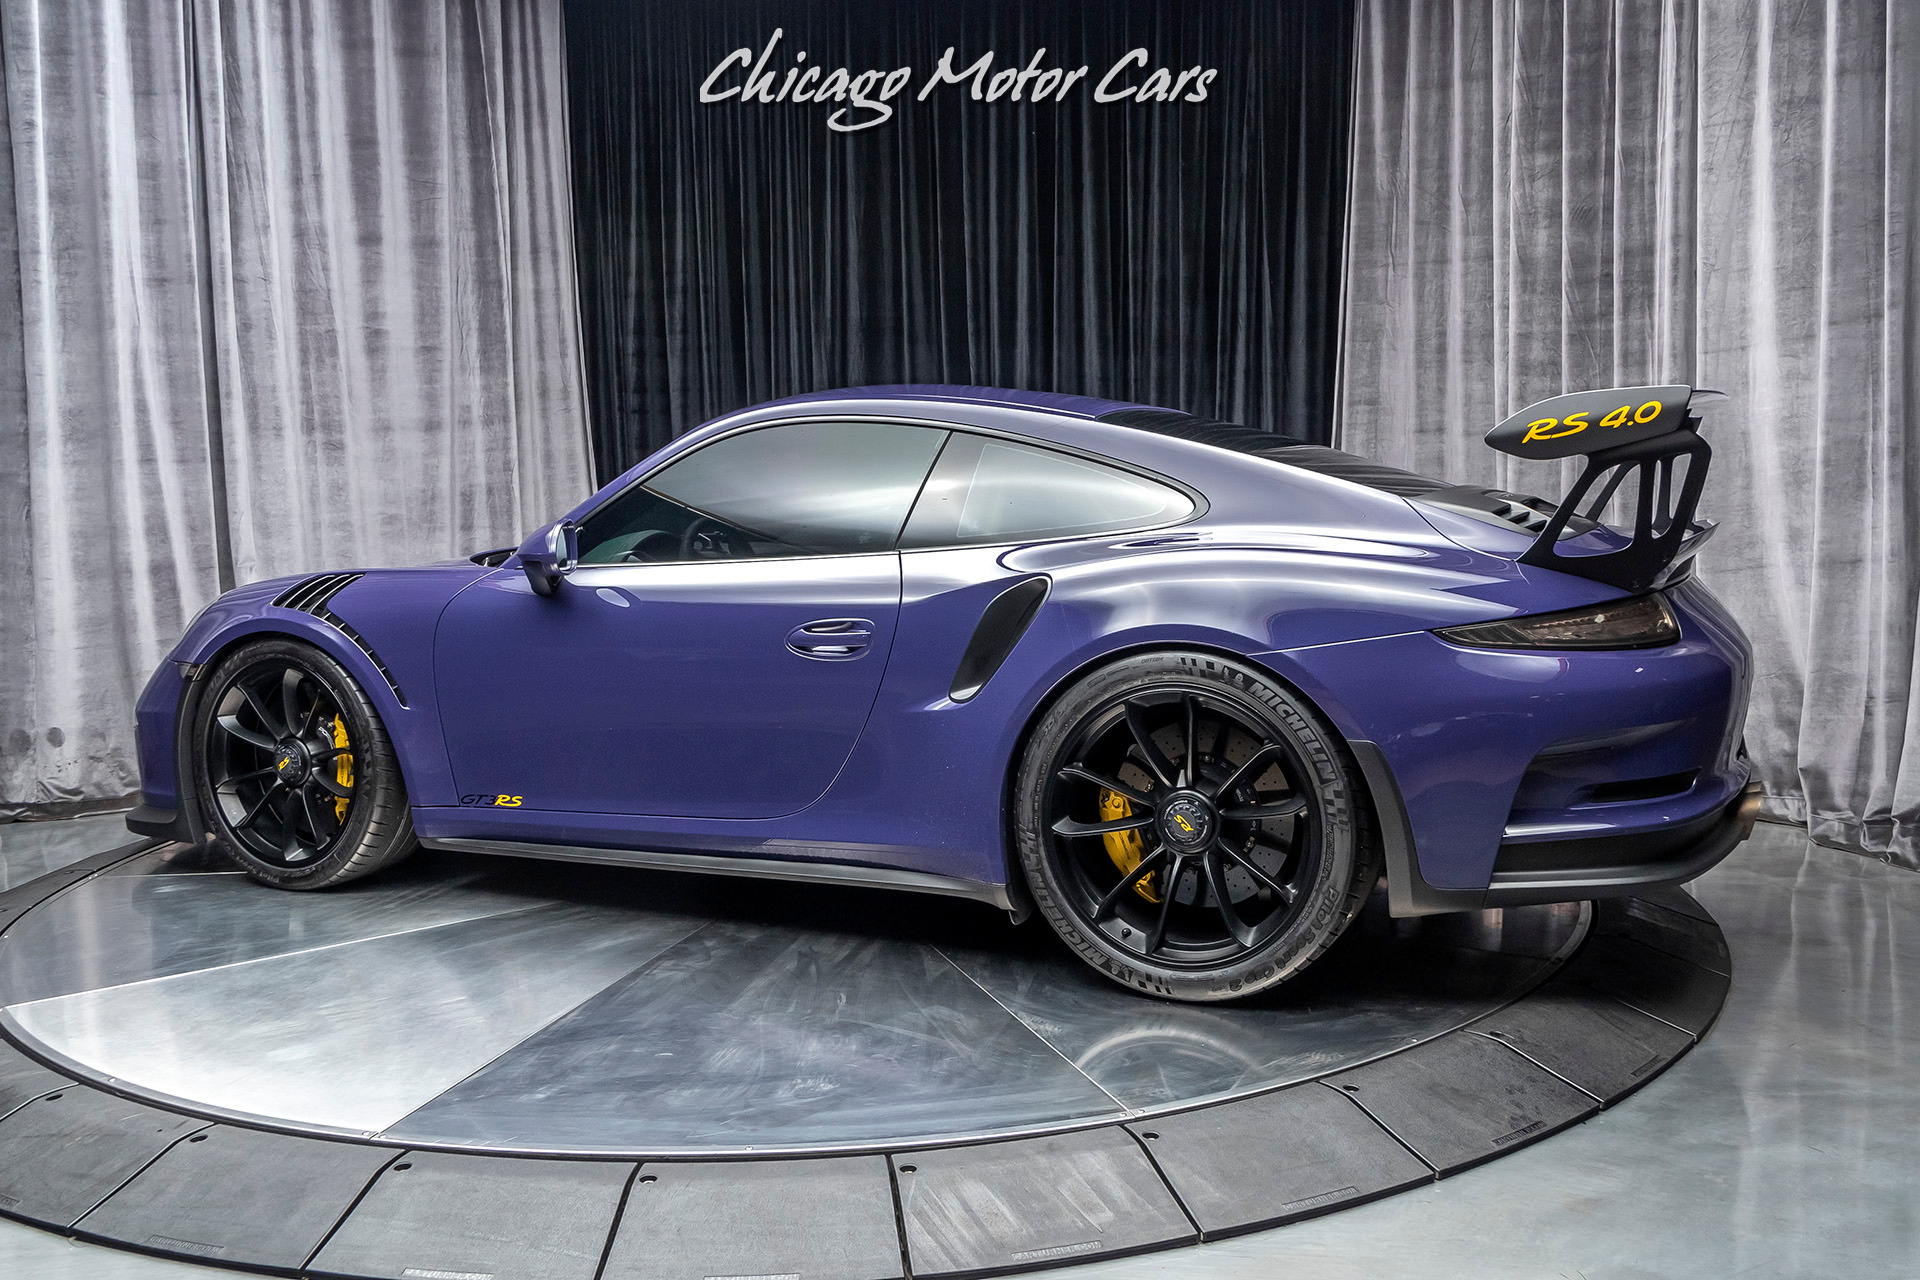 Used-2016-Porsche-911-GT3-RS-20k-in-Upgrades-Full-Custom-Exhaust-Porsche-Exclusive-Options